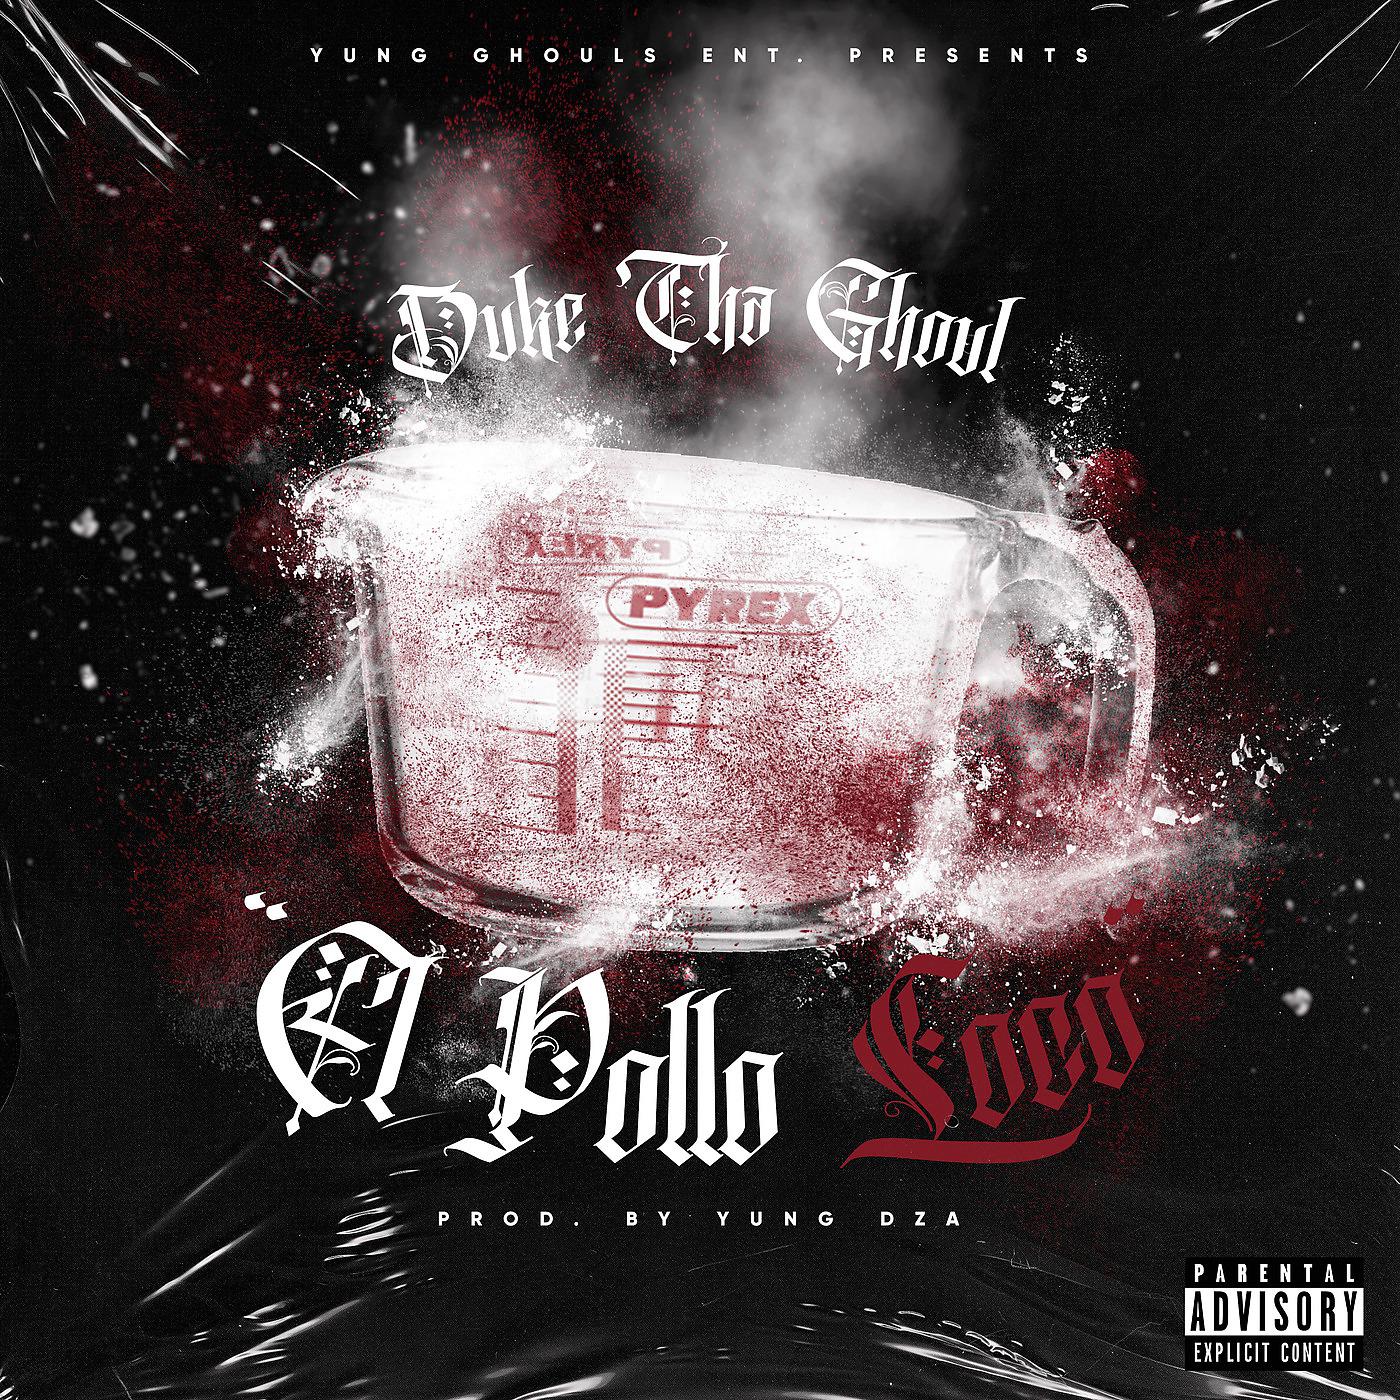 Постер альбома El Pollo Loco